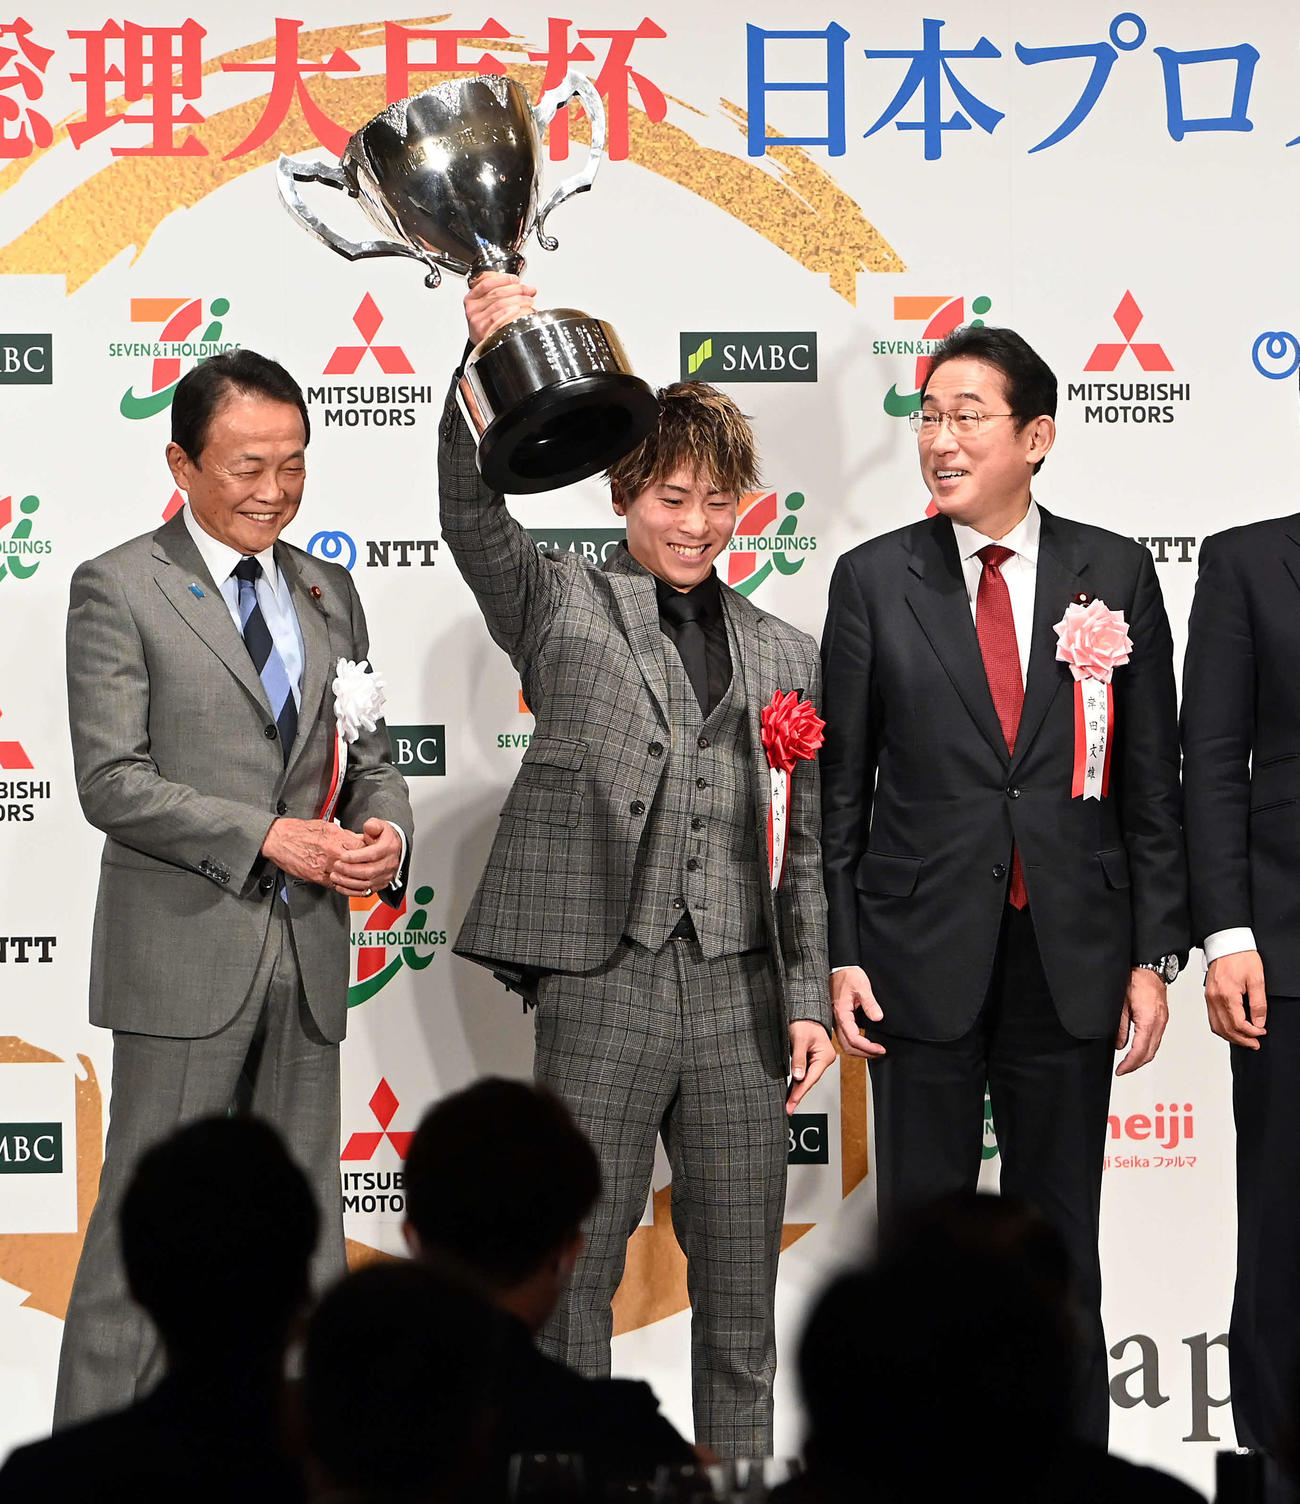 日本プロスポーツ大賞の大賞を受賞し内閣総理大臣杯を掲げるボクシングの井上。左は麻生会長、右は岸田首相（撮影・たえ見朱実）